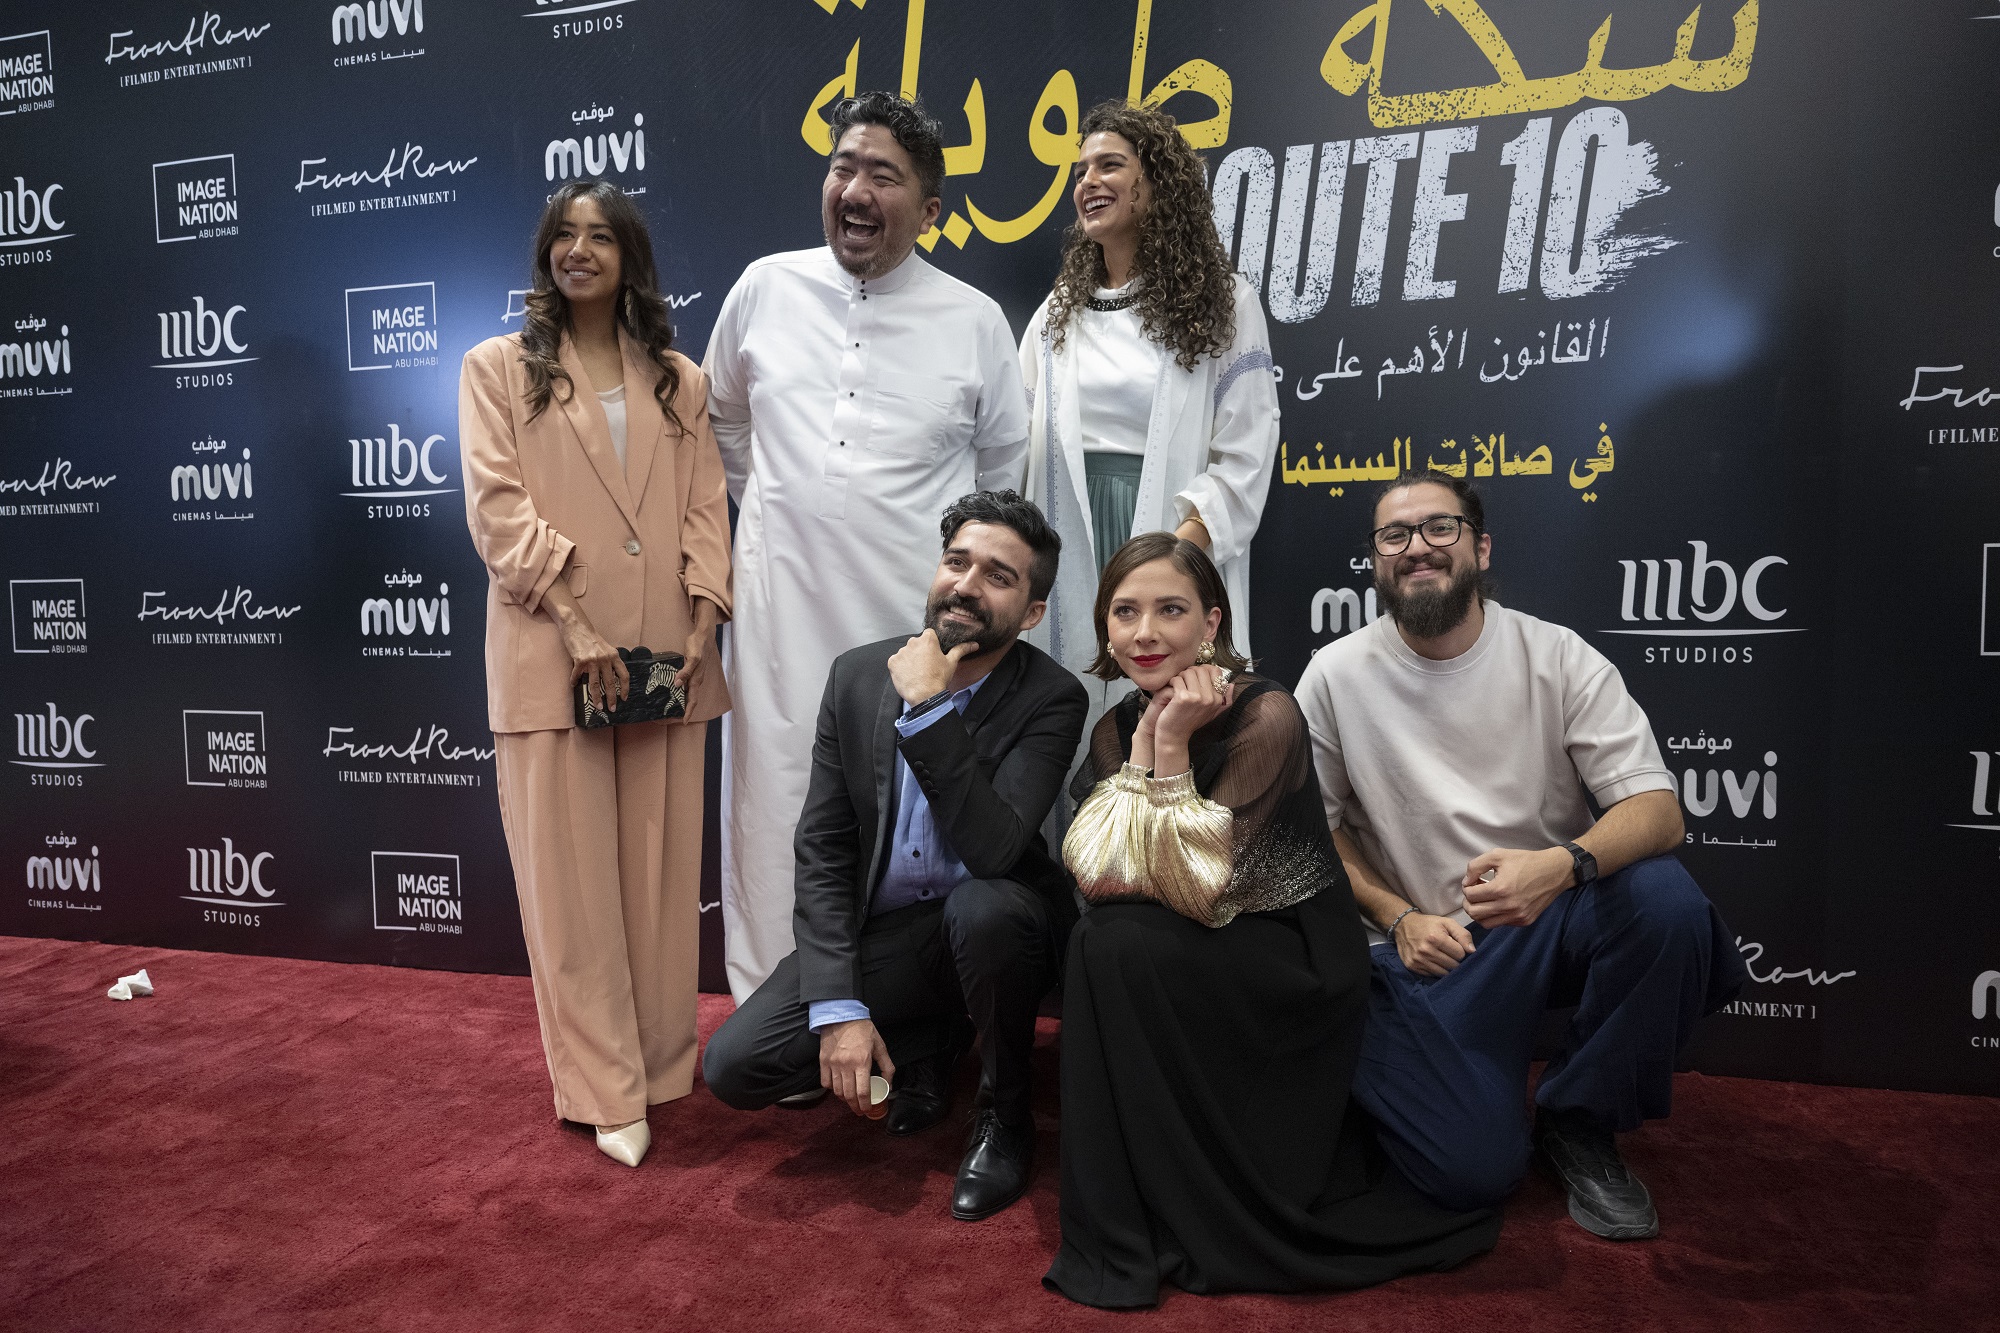 إطلاق الفيلم السعودي "سكة طويلة" في الرياض مع عرض أول حصري بحضور نجوم الفيلم ...